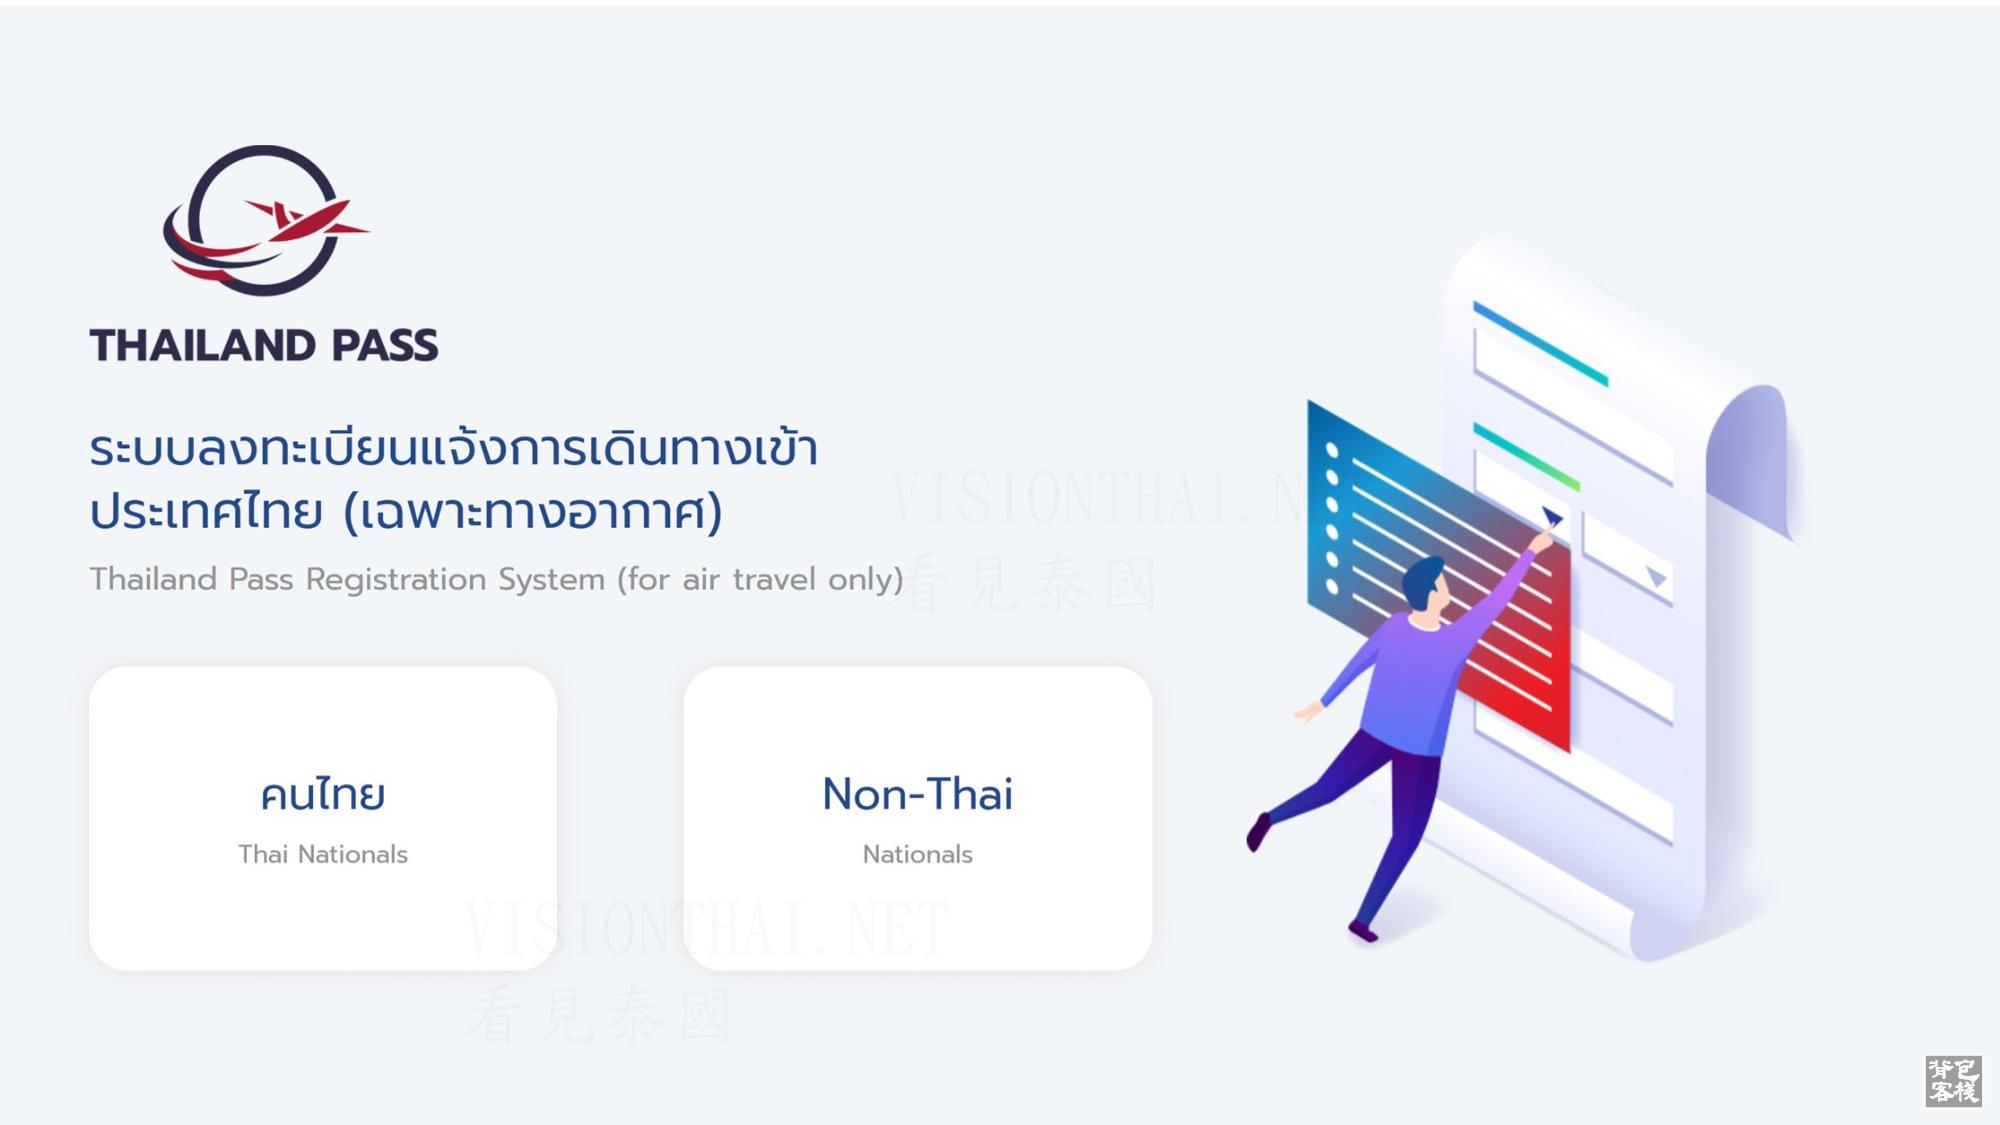 ทำตามขั้นตอนเพื่อกรอกข้อมูลบนเว็บไซต์ทางการ ในการยื่นเรื่องเดินทางเข้าประเทศ ภาพจาก／เว็บไซต์ Thailand Pass